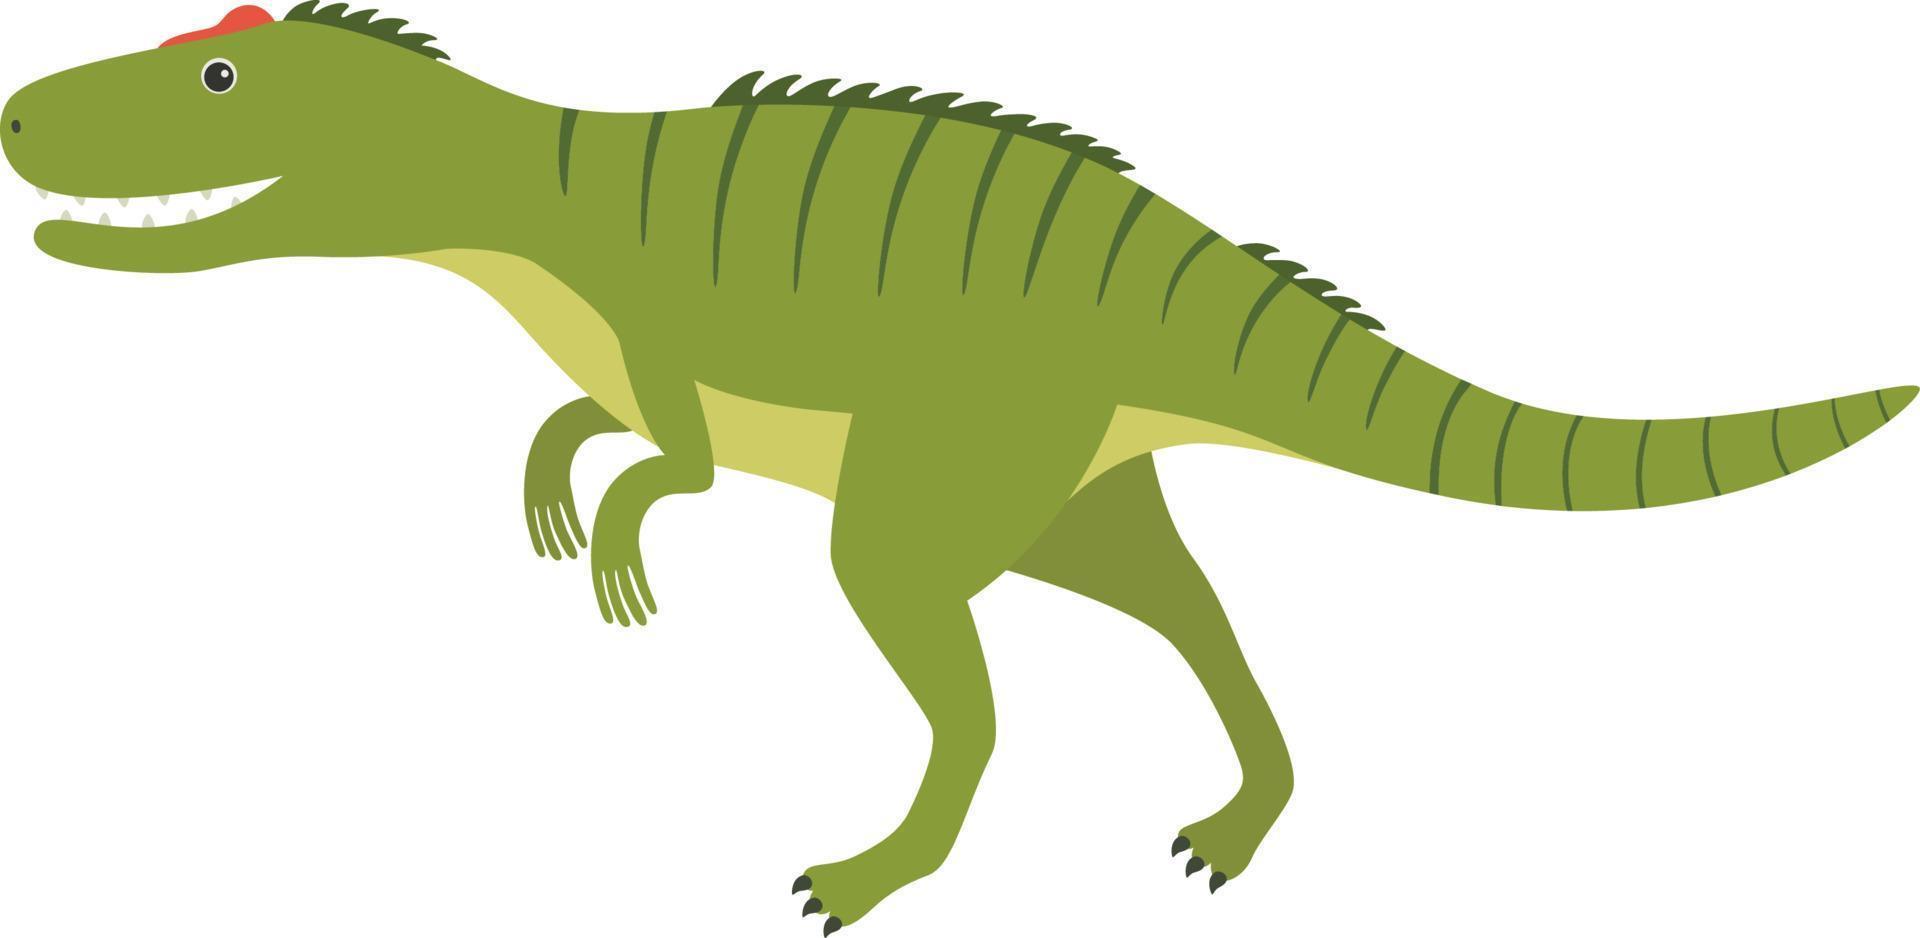 Allosaurus dinosaur illustration vector